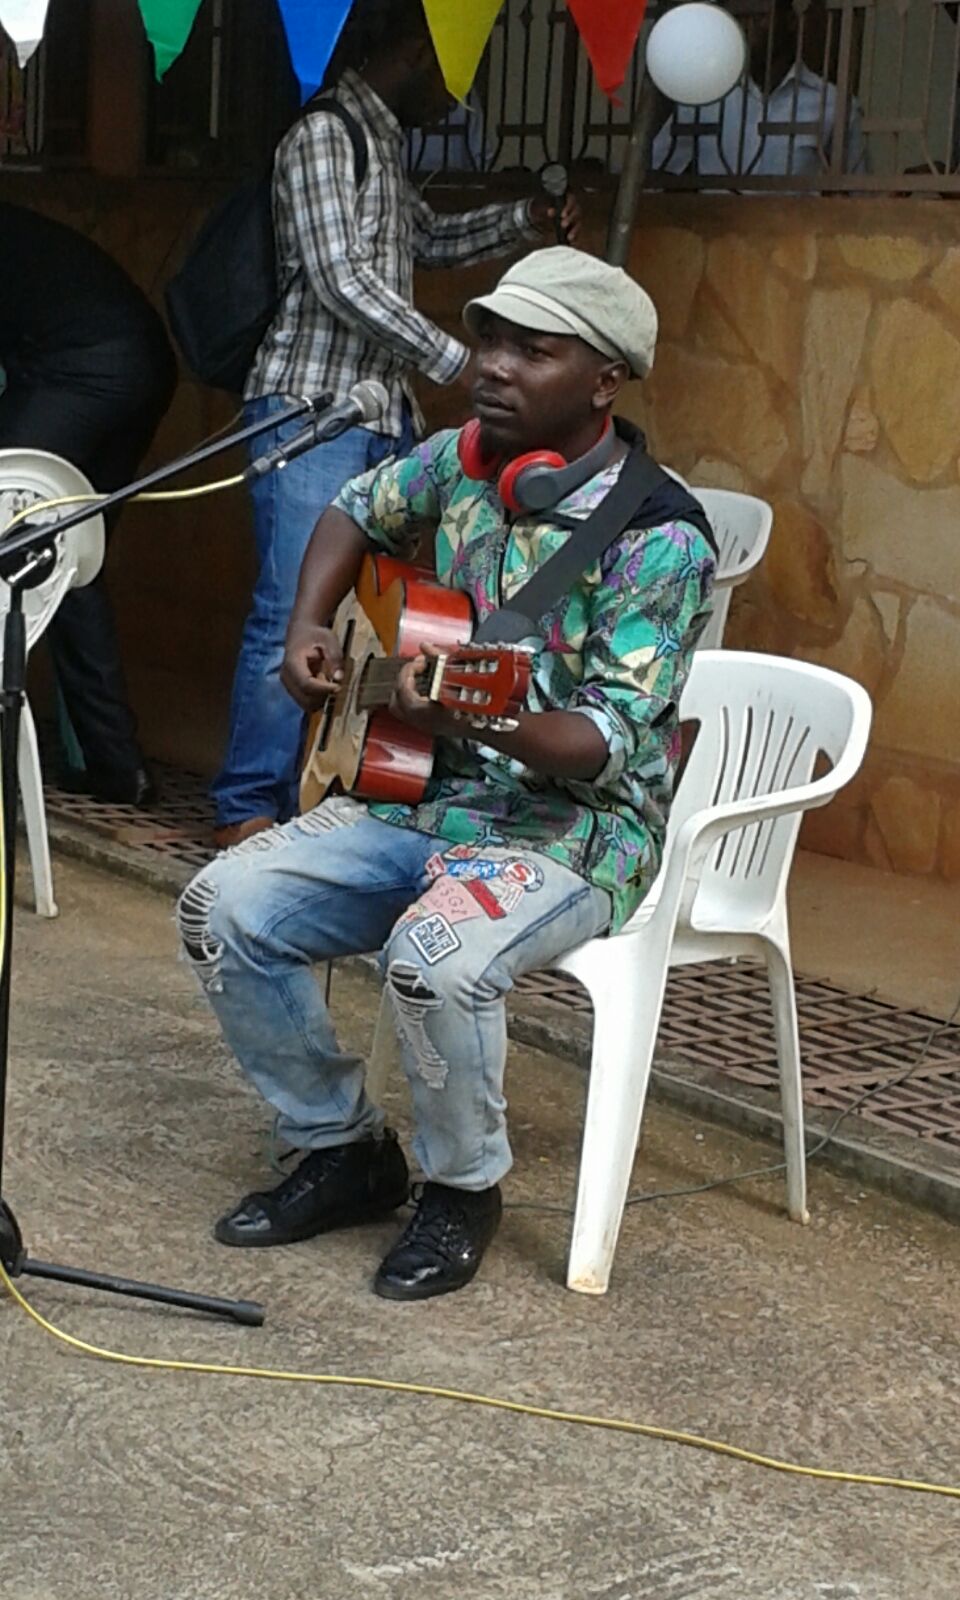 A “street” Singer!